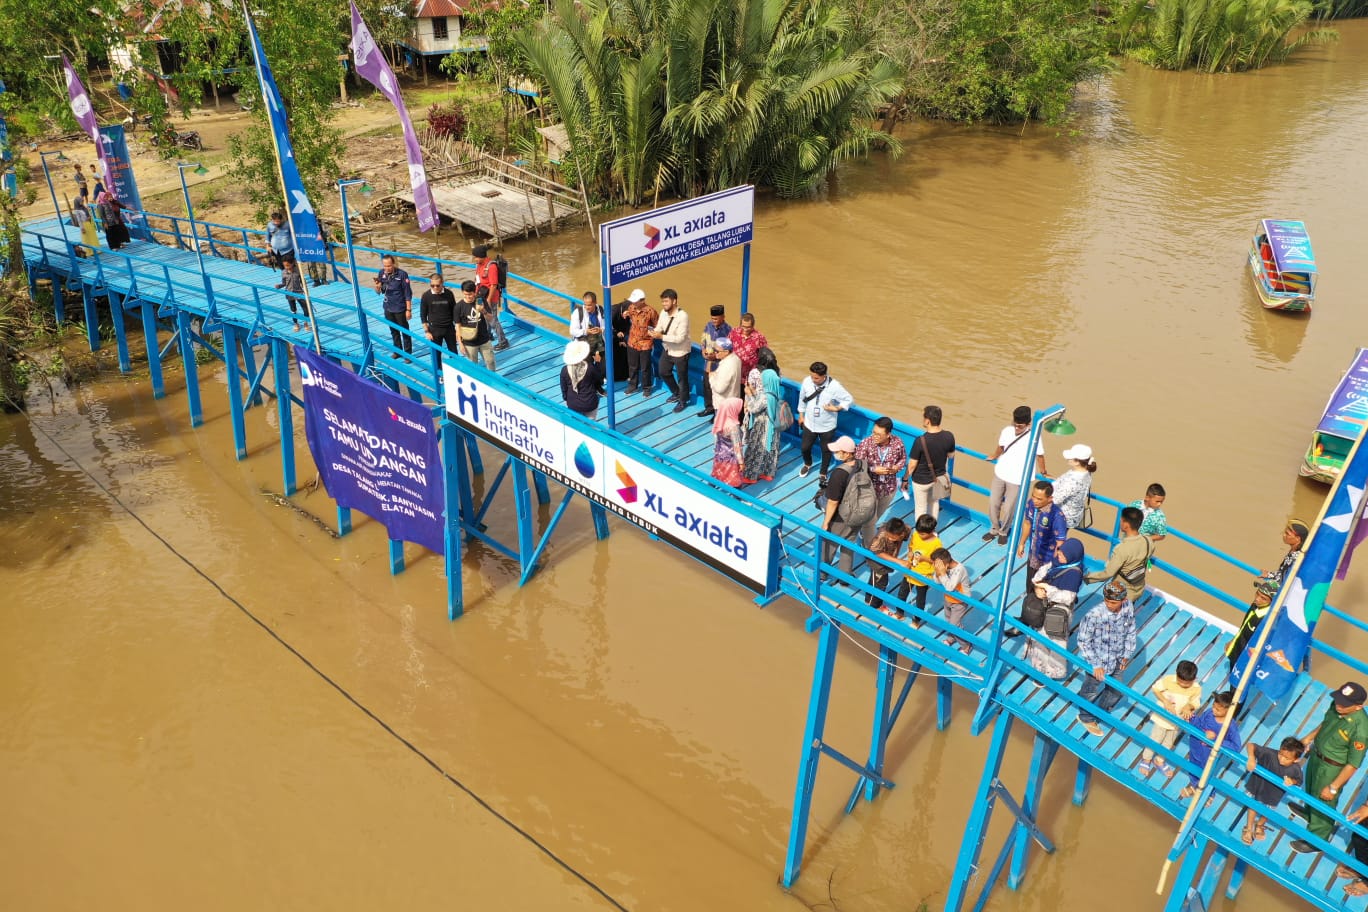 HI Bersama MT XL Bangun Jembatan serta Sarana Air Bersih di Pelosok Sumatera.